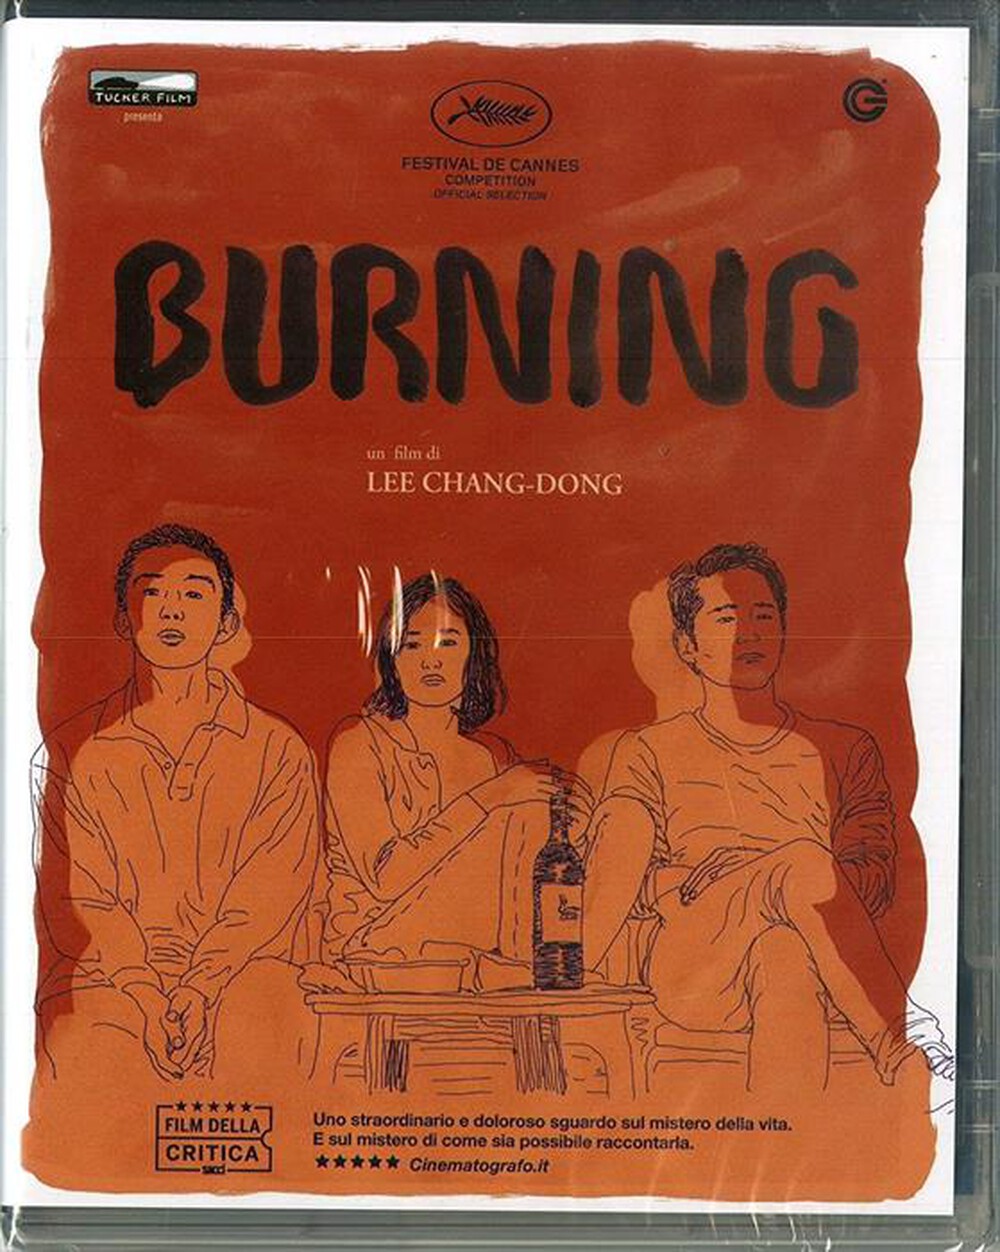 "TUCKER FILM - Burning"